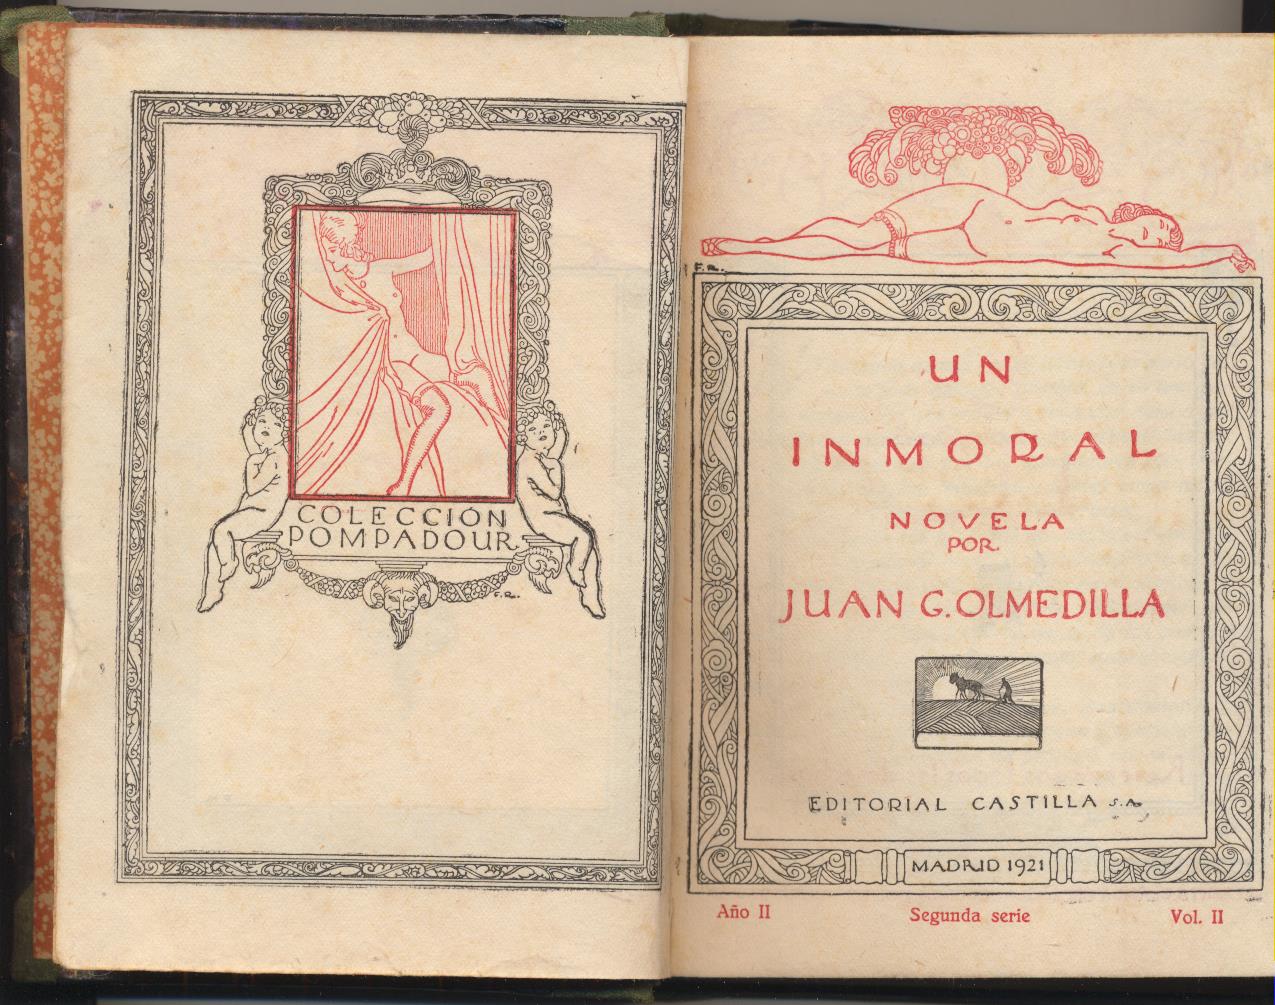 Juan G. Olmedilla. Un Inmoral. Colección Pompadour. Editorial Castilla. Madrid 1921